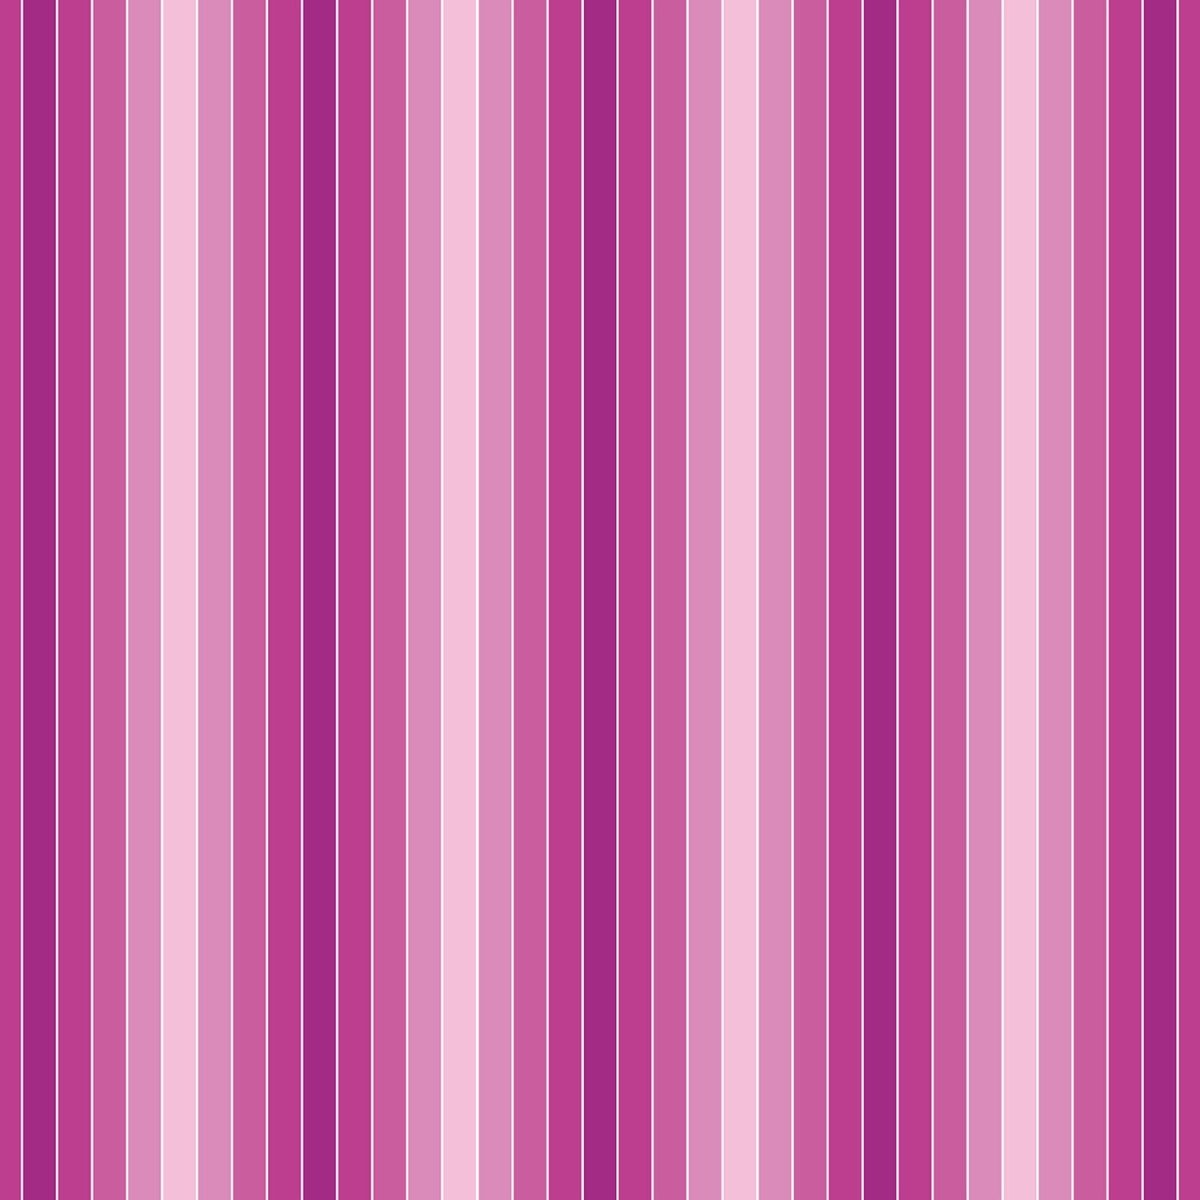 Beistelltisch Pink Muster M0096 entdecken - Bild 2